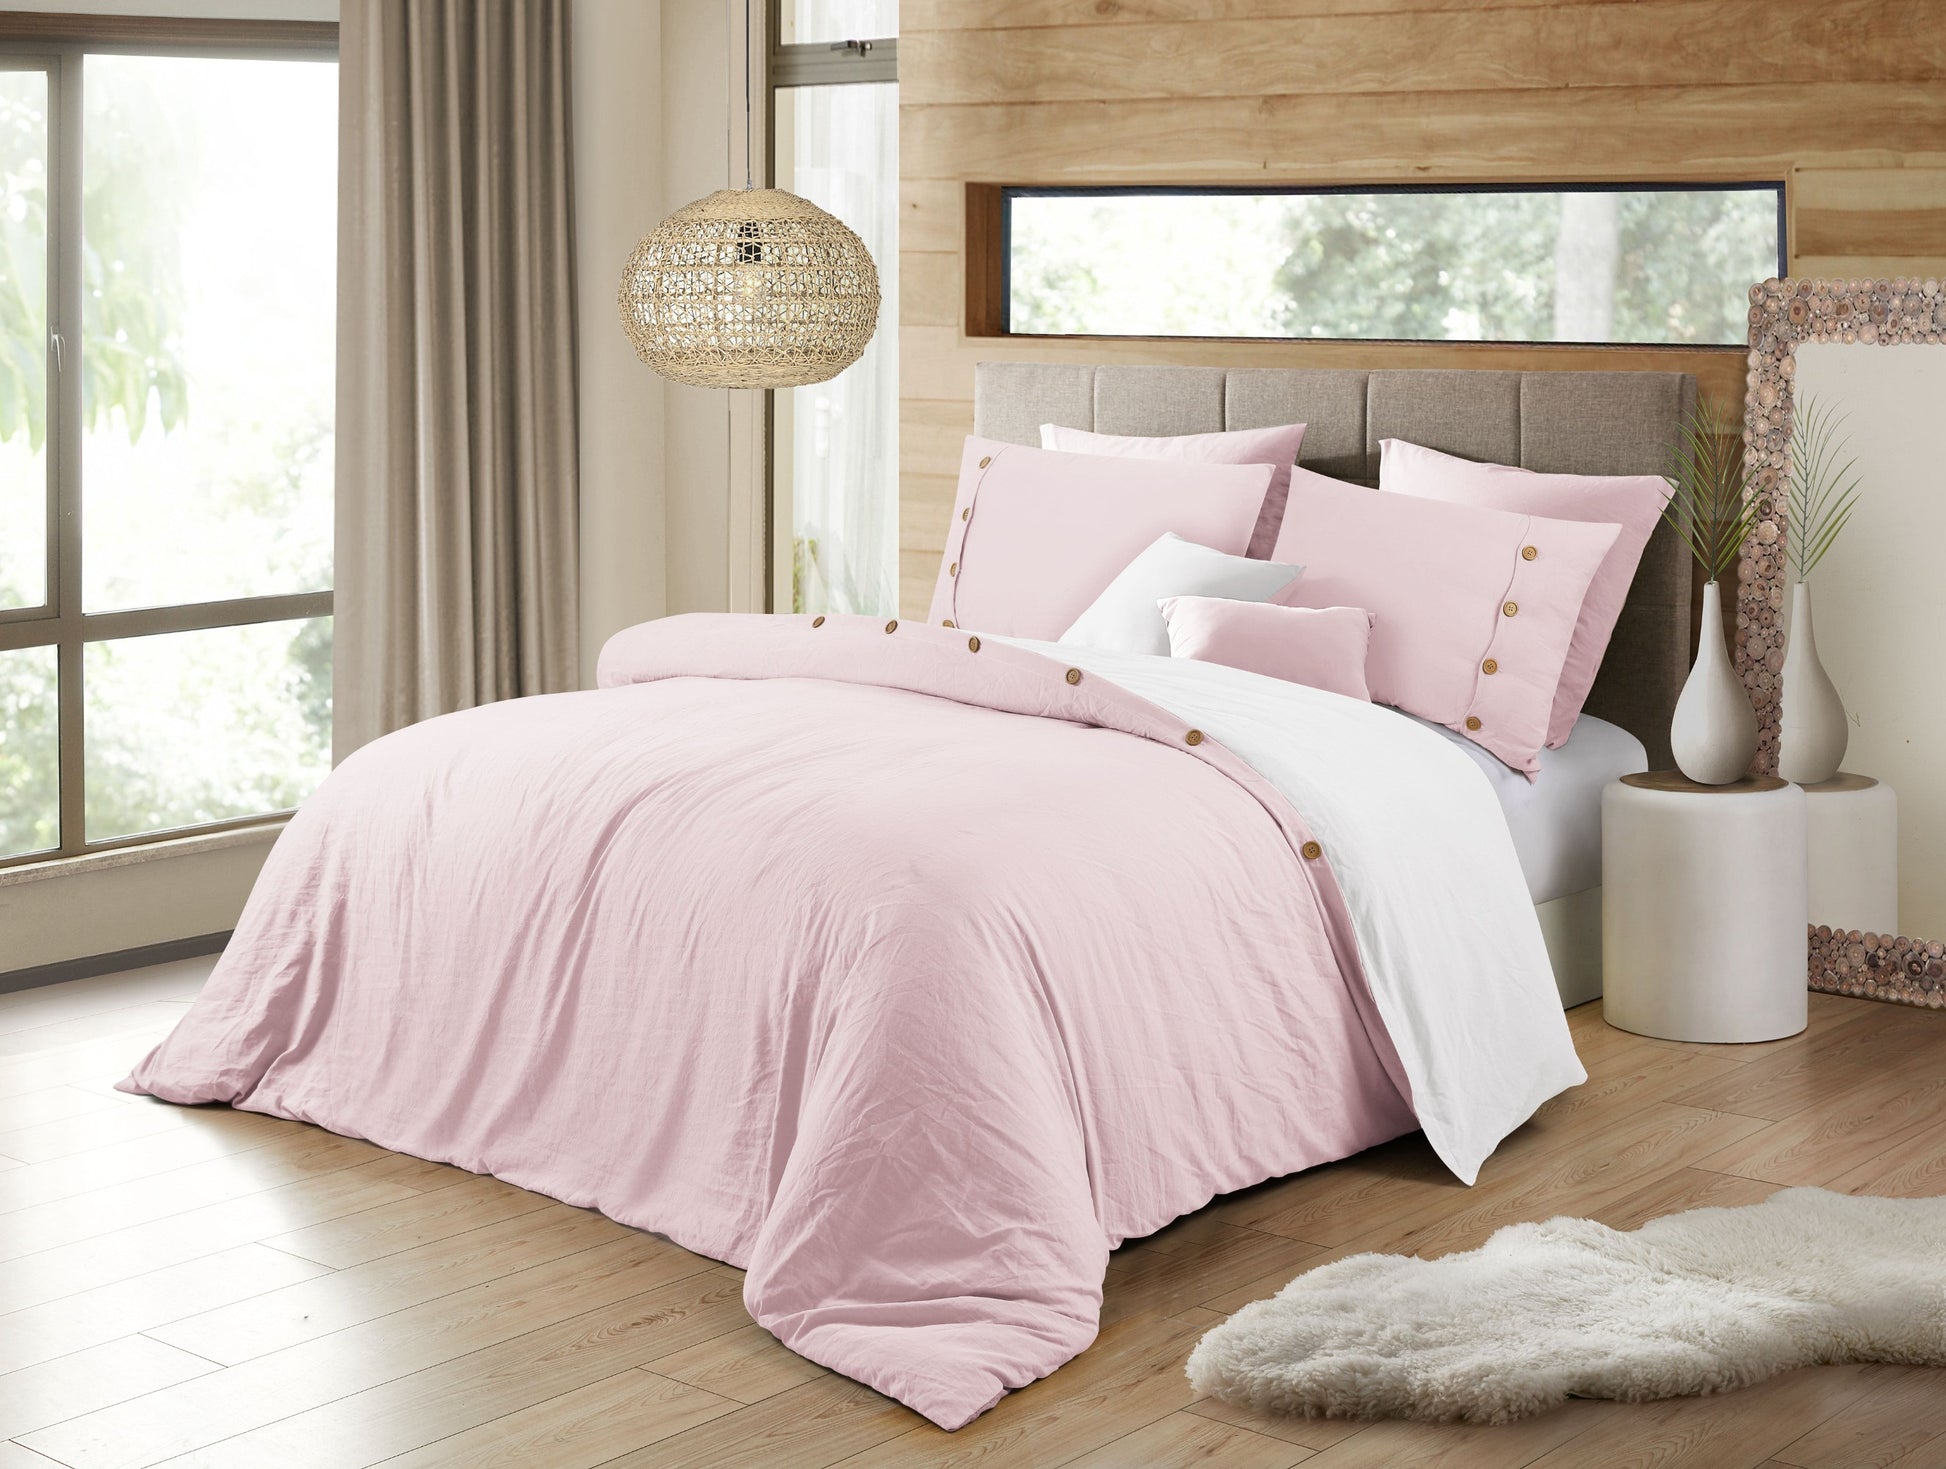 Solid Color Bedding Reversible Duvet Cover Set - Pink